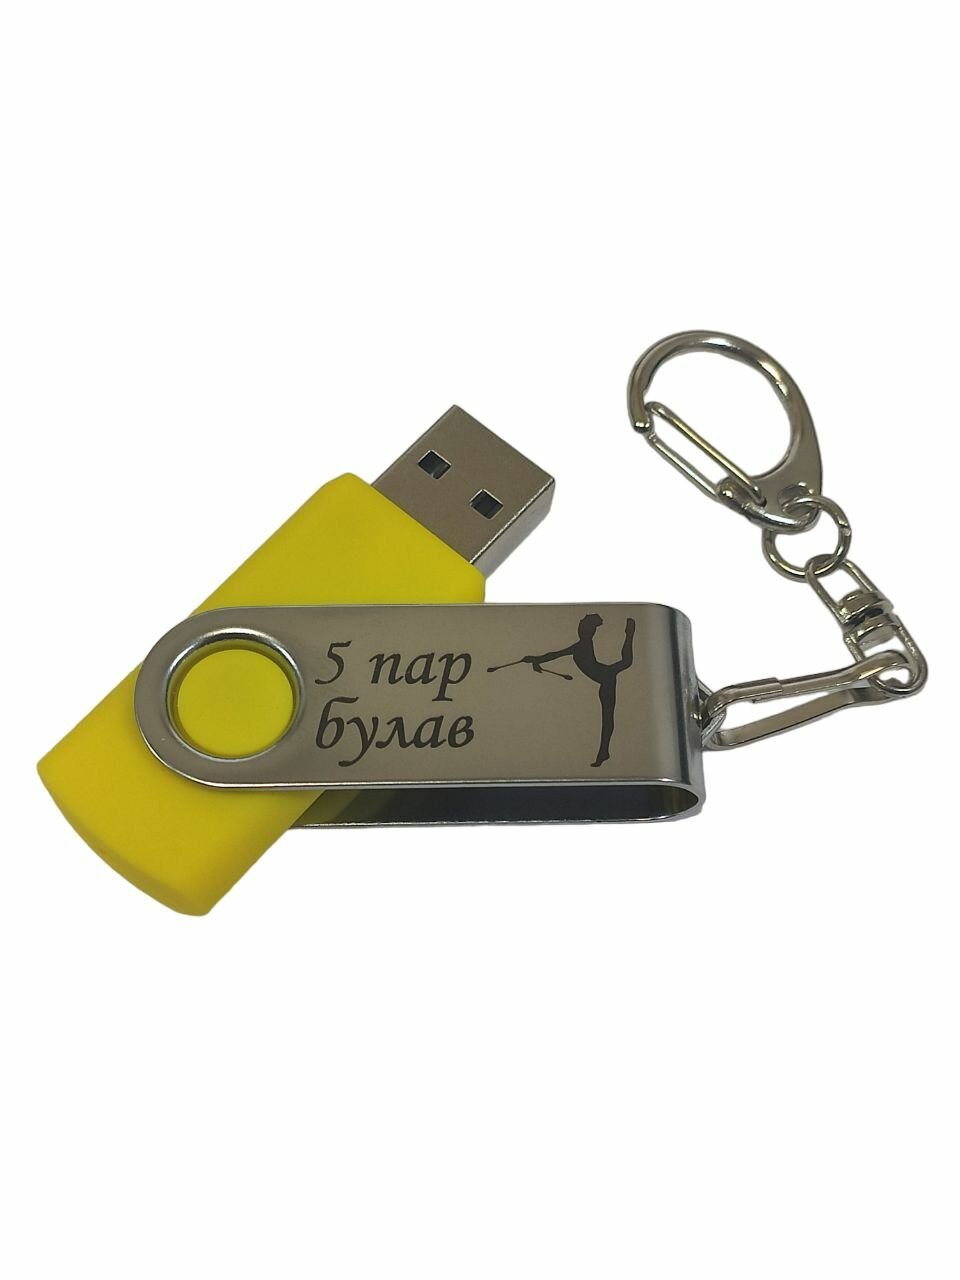 Подарочный USB-флеш-накопитель Гимнастика 5 пар Булав (Групповые упражнения) сувенирная флешка белая 4GB